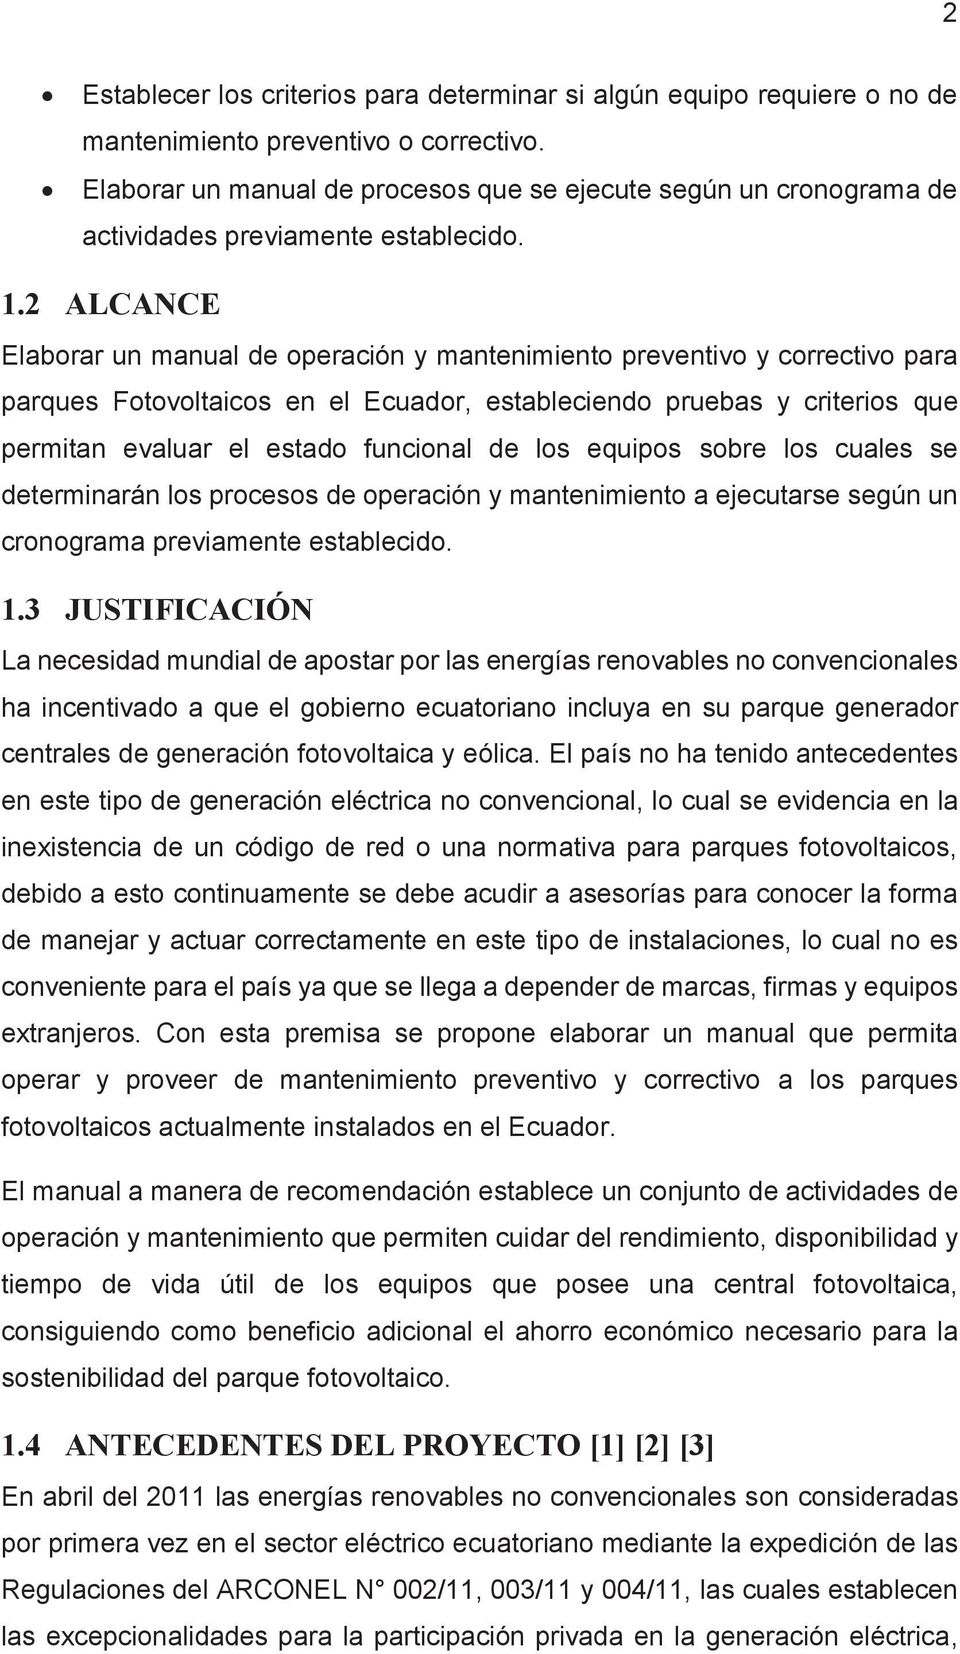 2 ALCANCE Elaborar un manual de operación y mantenimiento preventivo y correctivo para parques Fotovoltaicos en el Ecuador, estableciendo pruebas y criterios que permitan evaluar el estado funcional